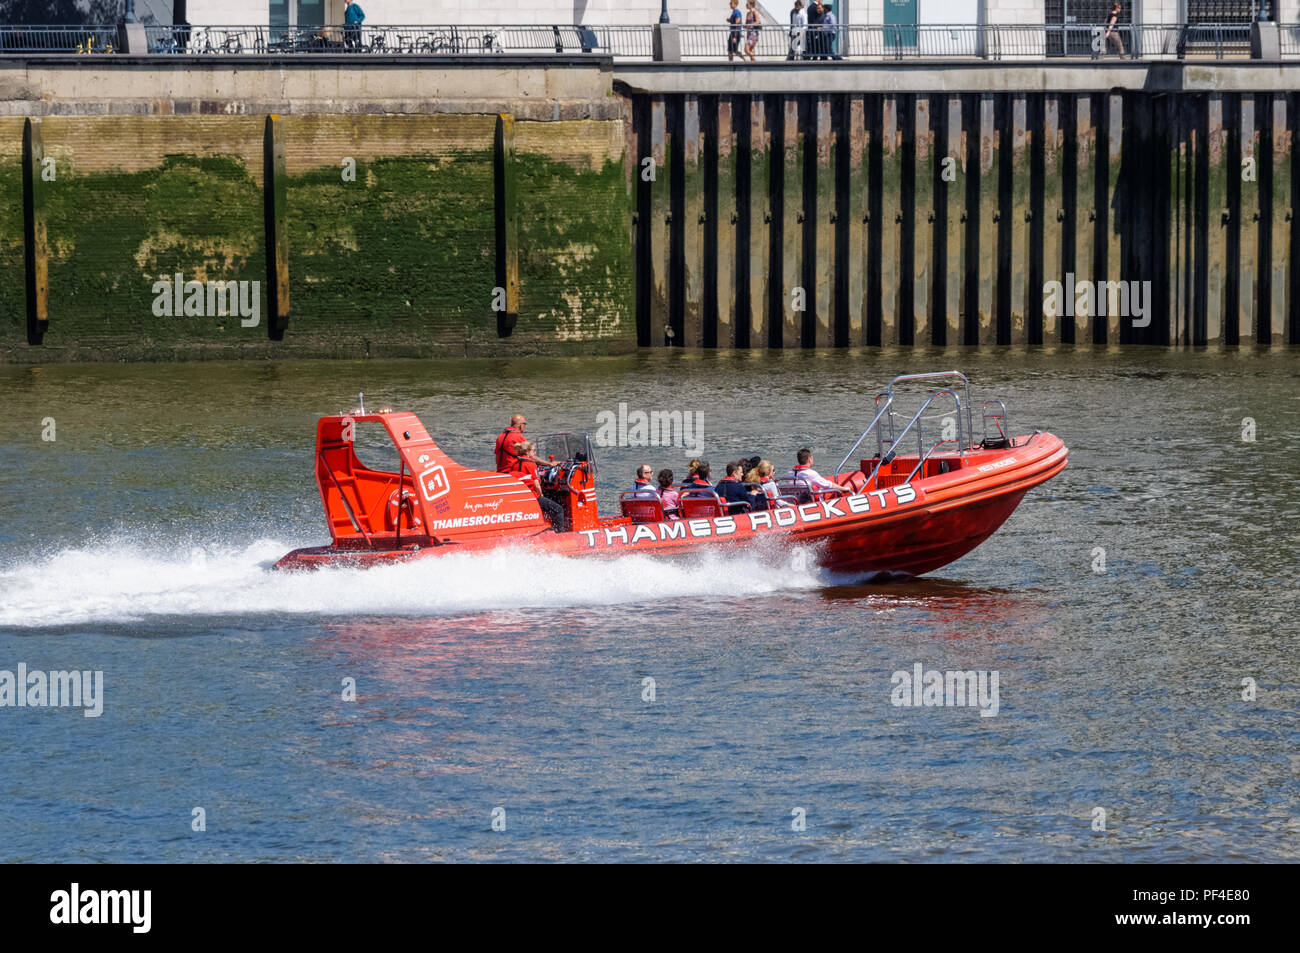 Les fusées de la Tamise en bateau touristique sur la Tamise à Londres Angleterre Royaume-Uni UK Banque D'Images